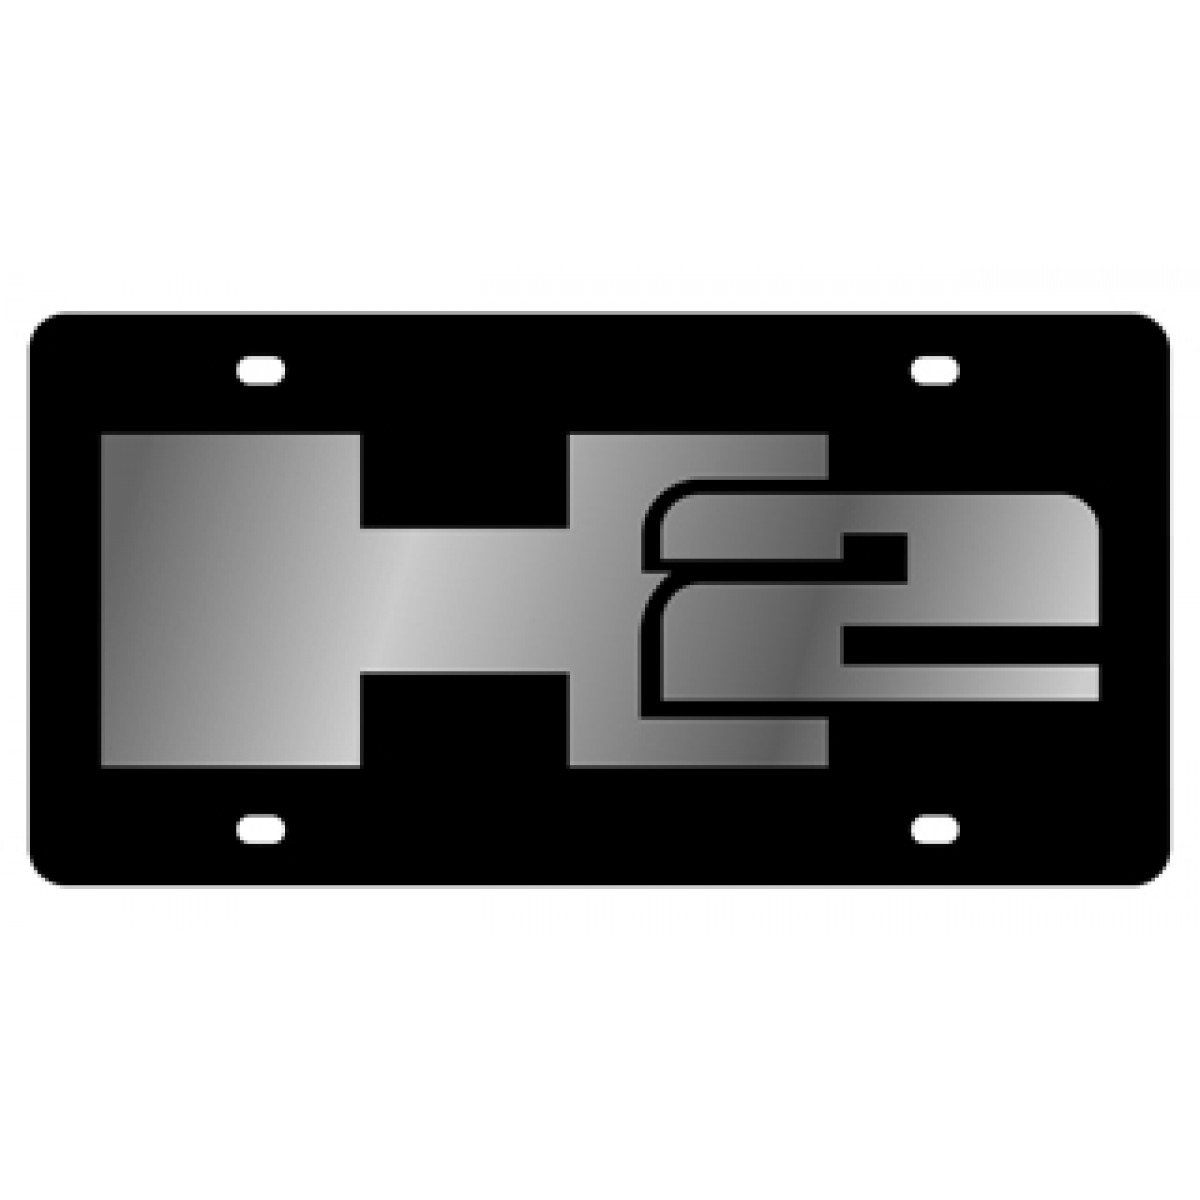 Hummer h3 logo